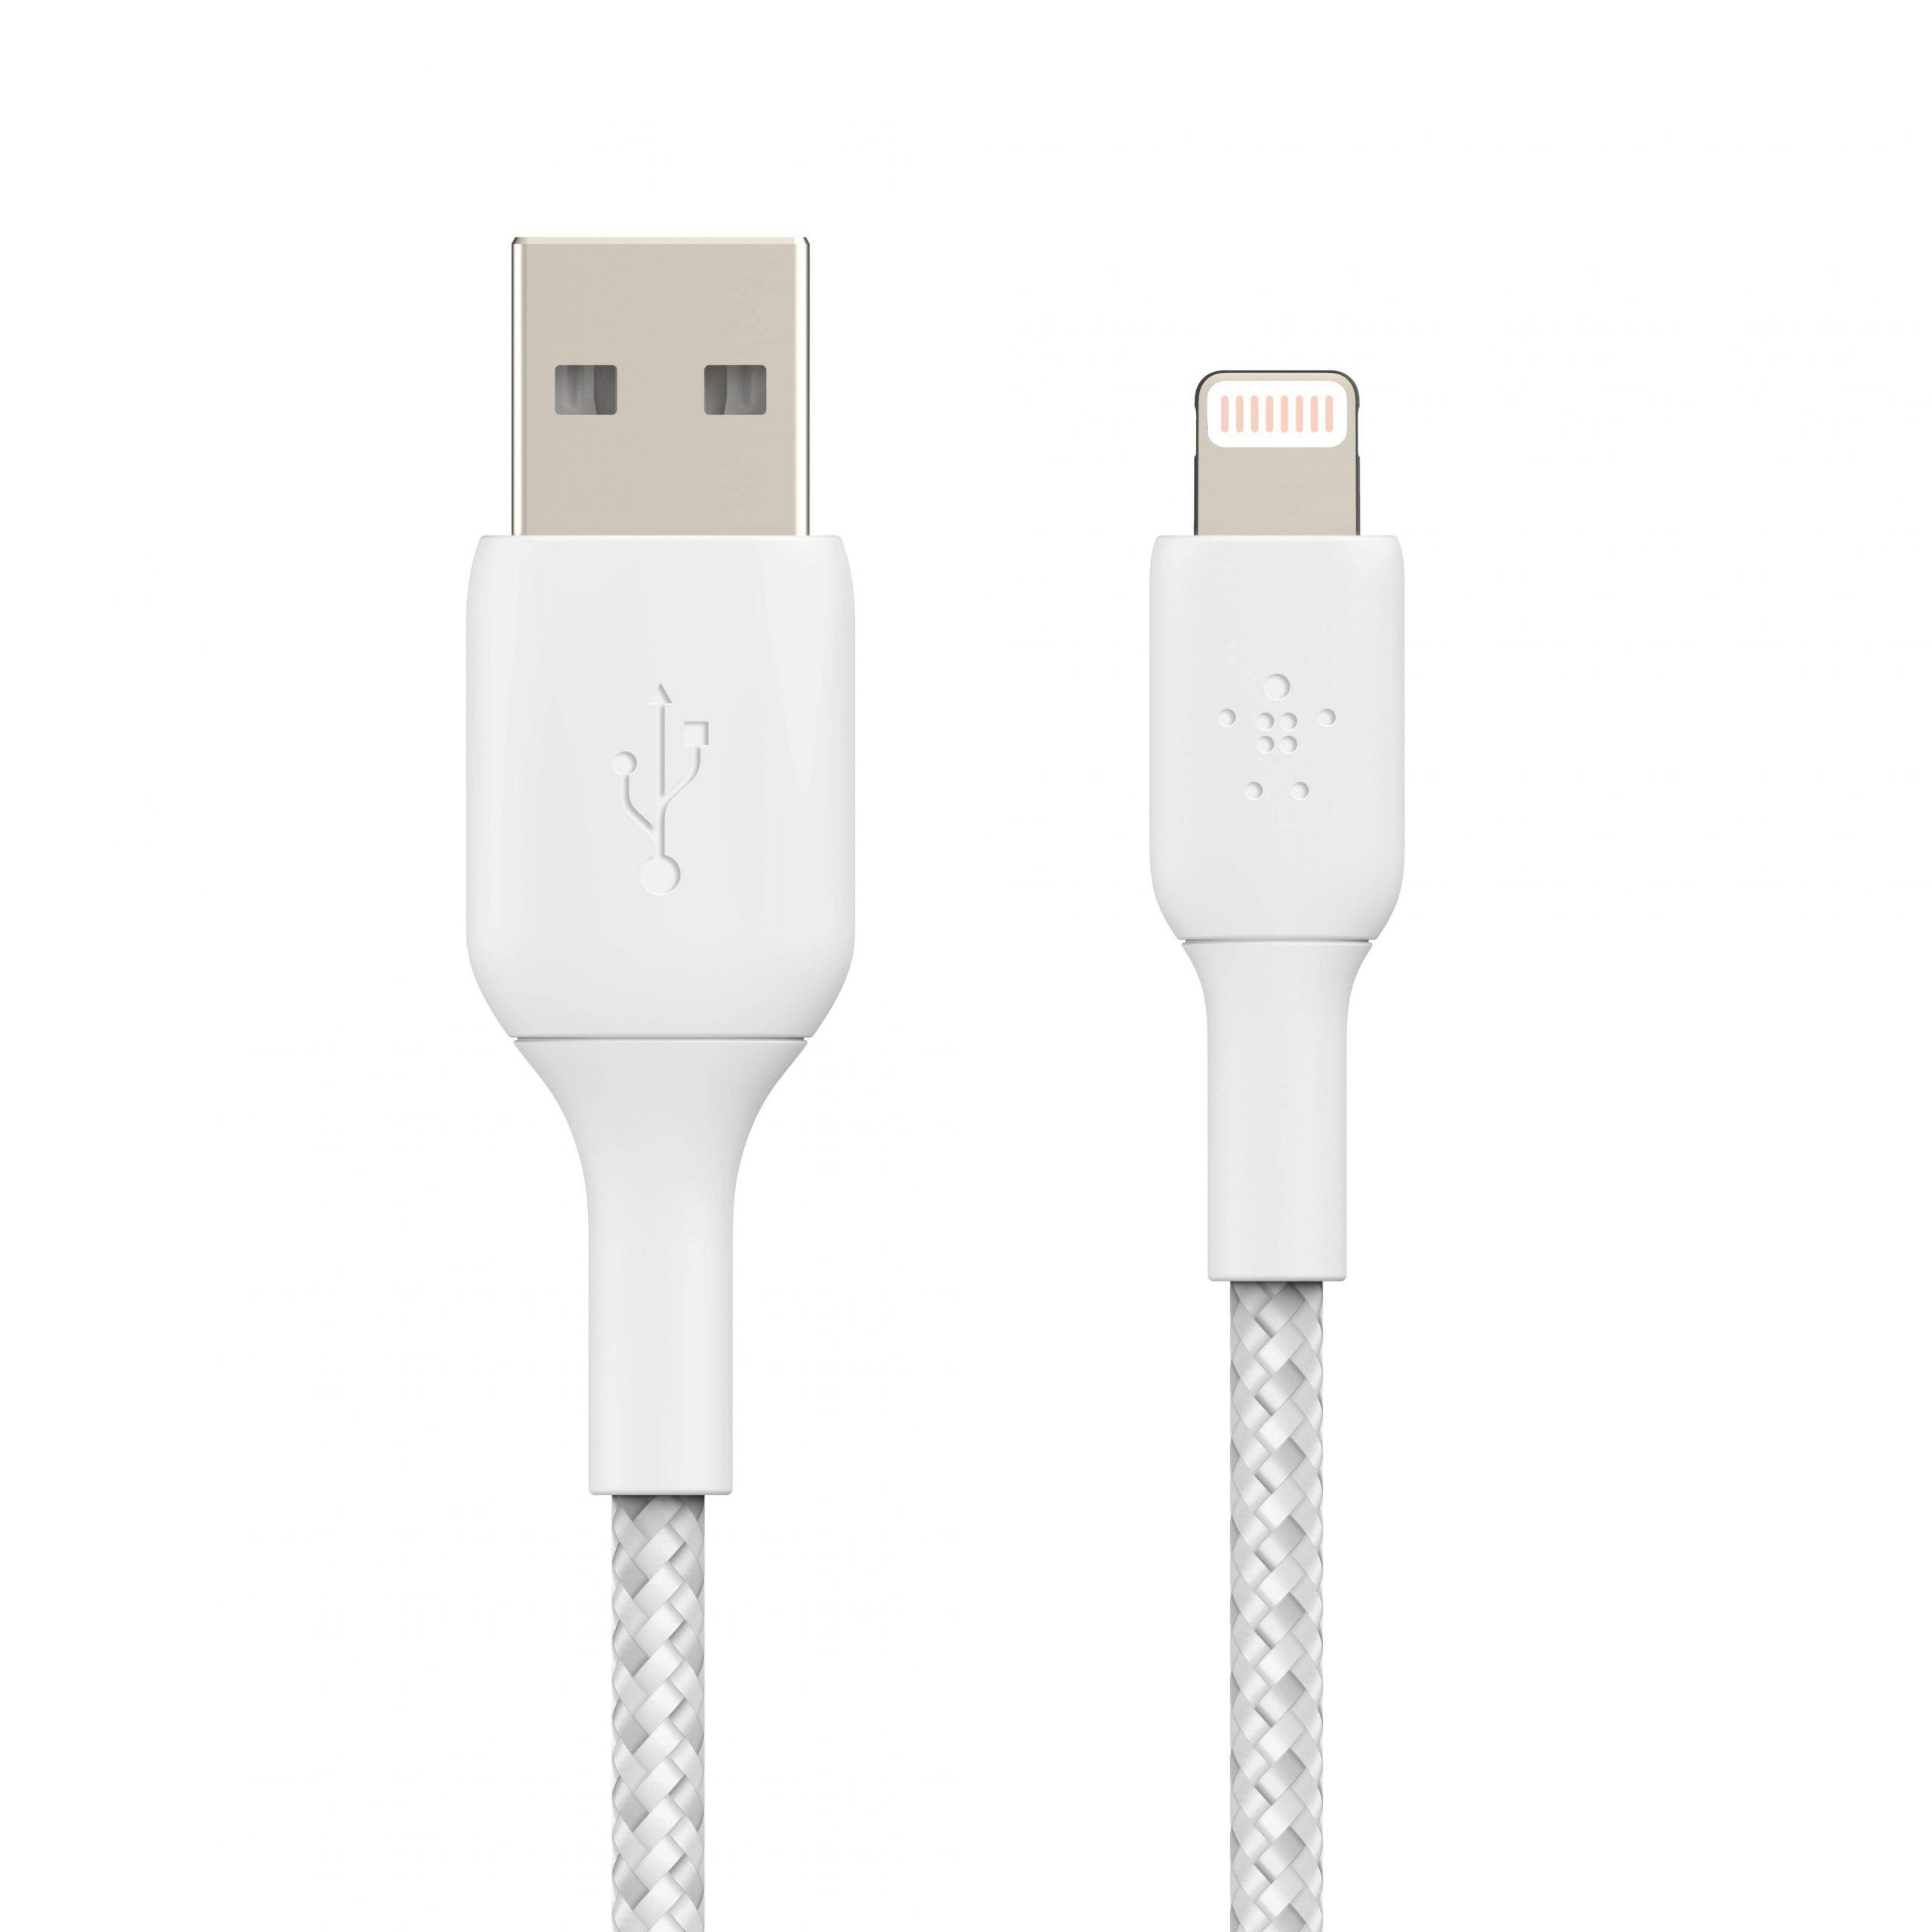 وصلة شاحن (كيبل شحن) بمدخل USB-A و منفذ Lightning للآيفون و الآيباد 3 متر أبيض Belkin - Boost Charge USB-A to Lightning Braided Cable - cG9zdDo1NTc1NQ==